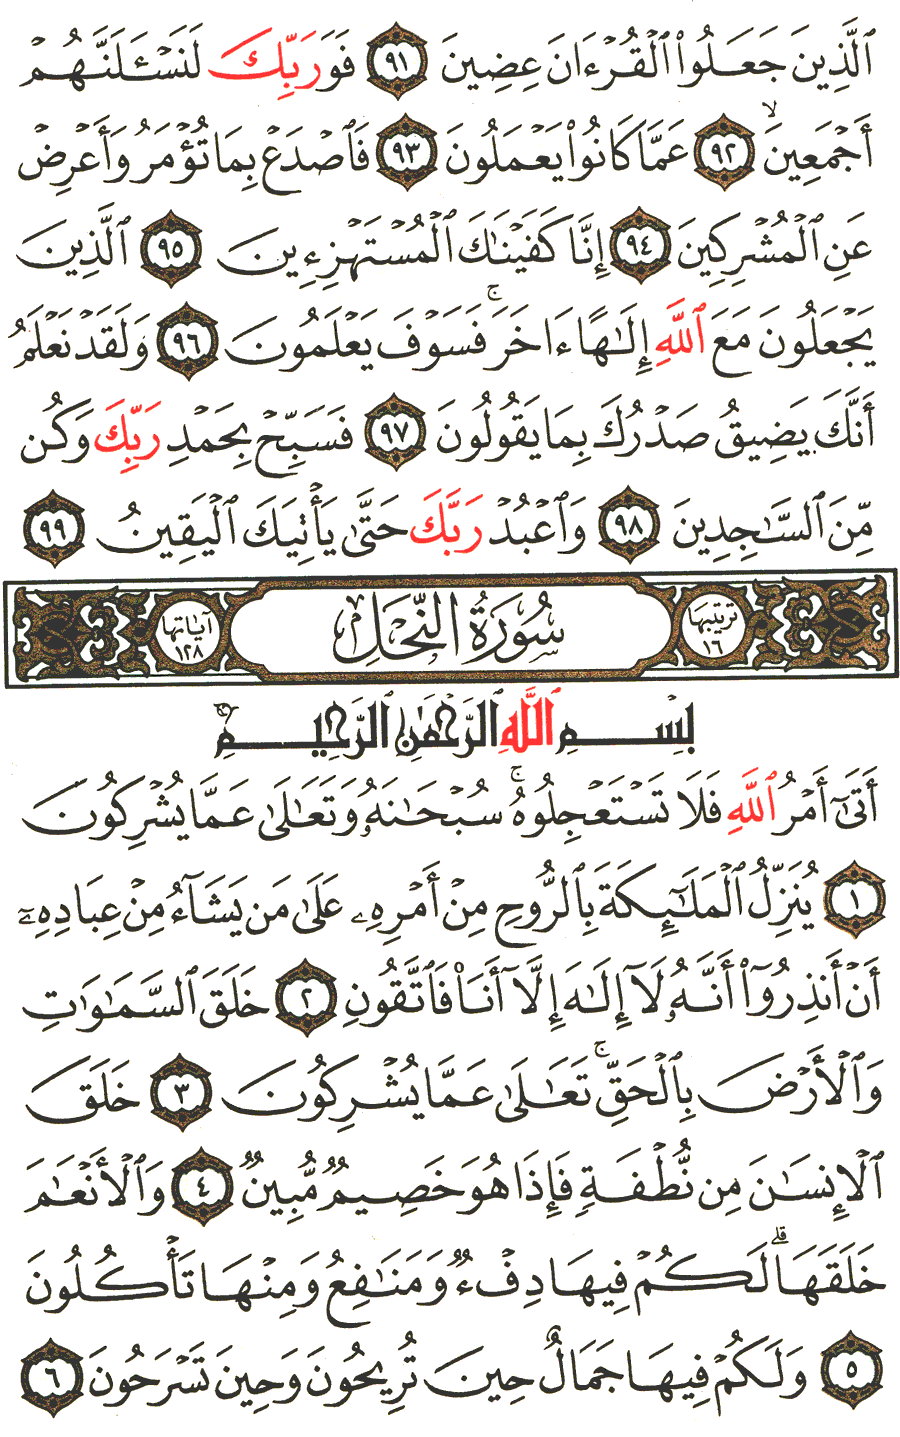 الصفحة رقم 267  من القرآن الكريم مكتوبة من المصحف